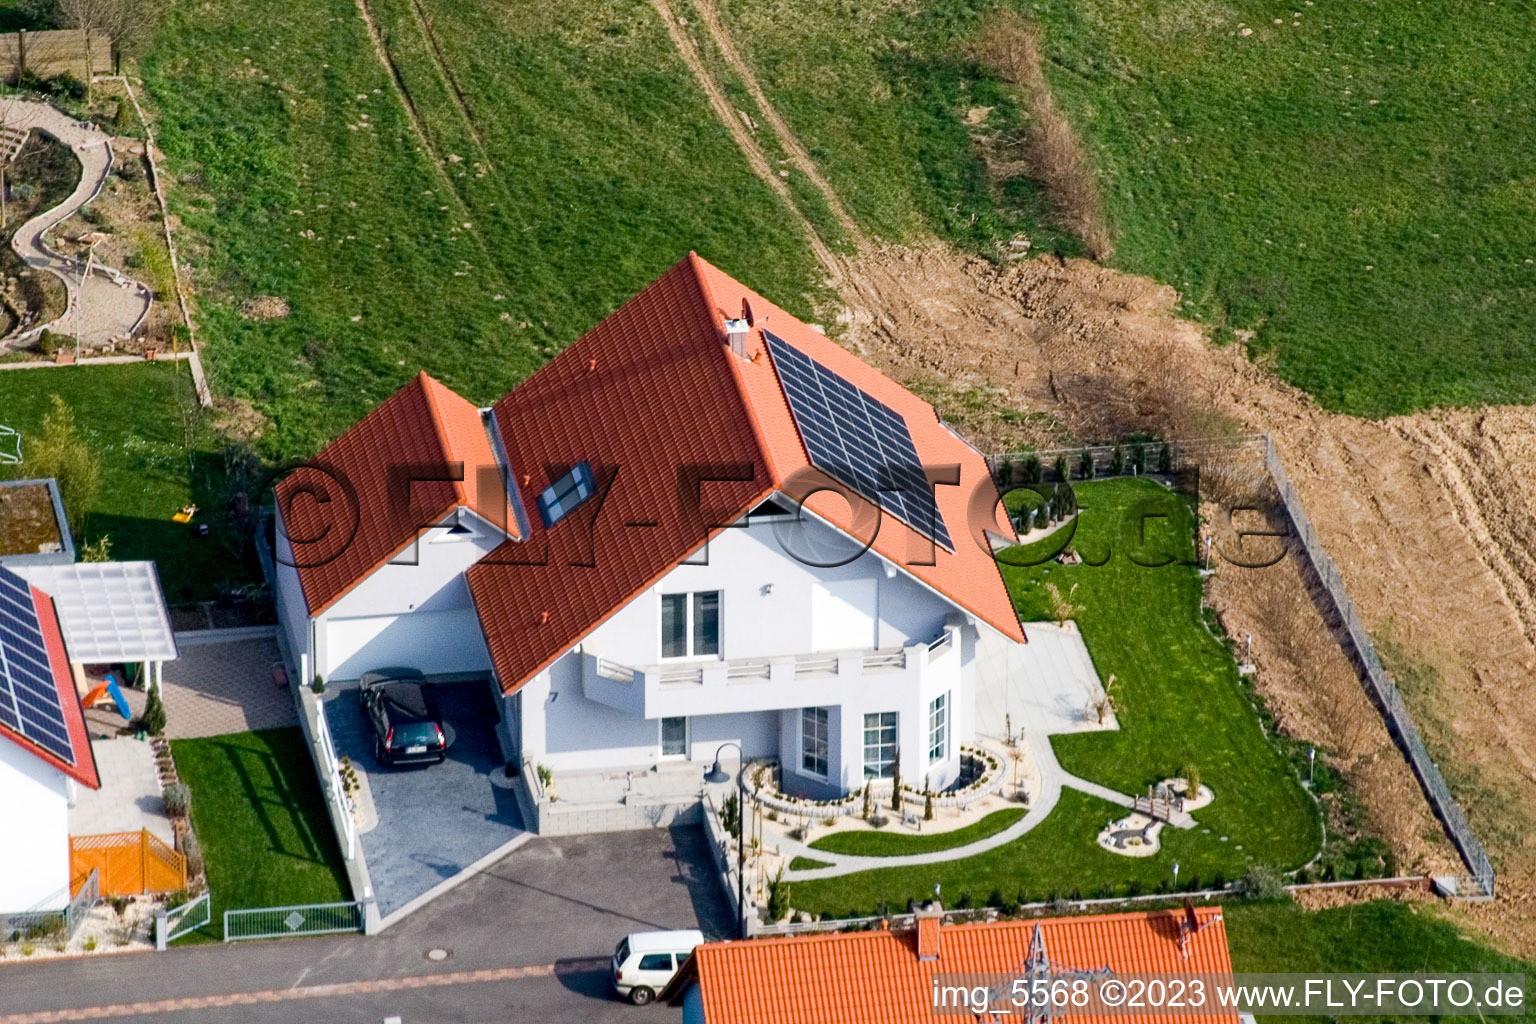 Hergersweiler im Bundesland Rheinland-Pfalz, Deutschland von der Drohne aus gesehen